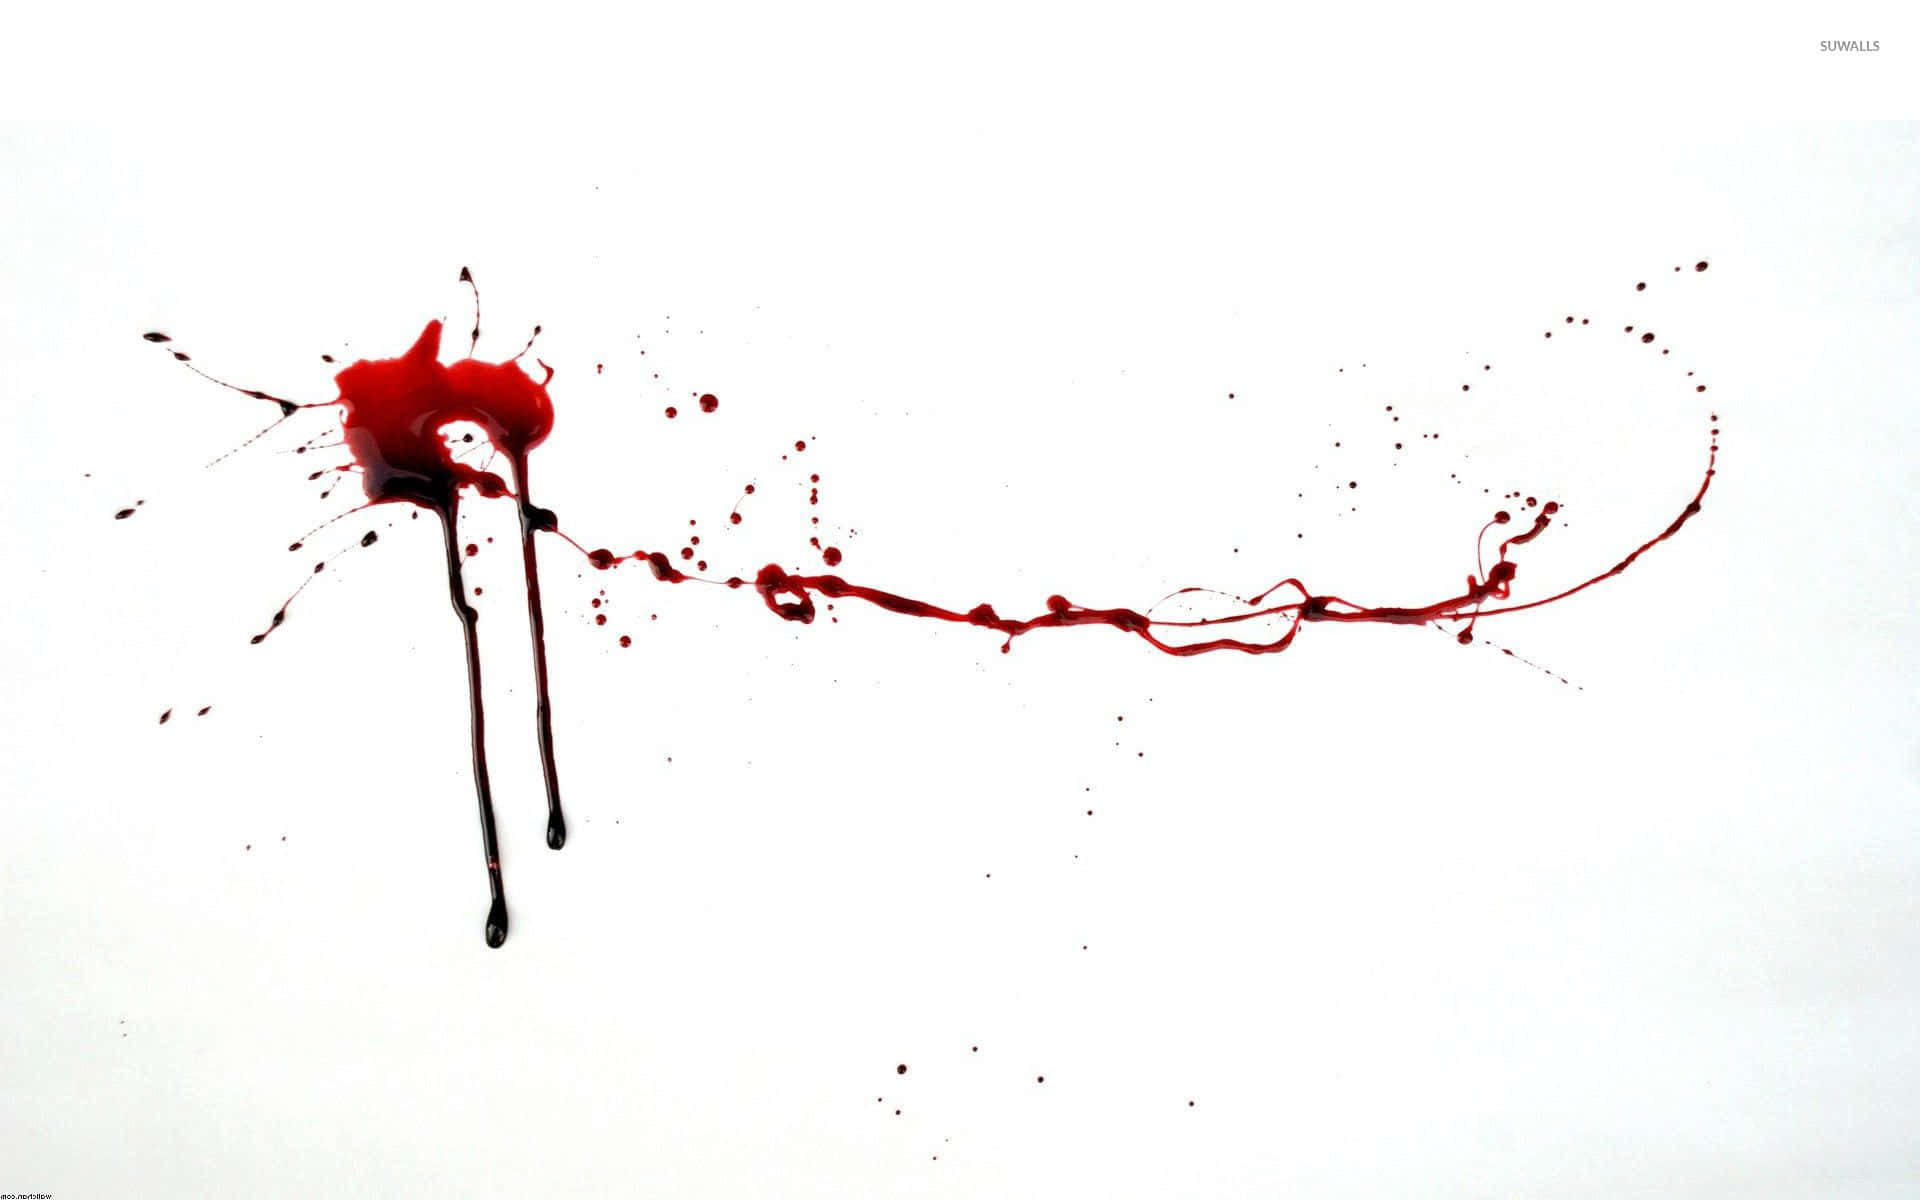 Intense splatter of blood on a wall